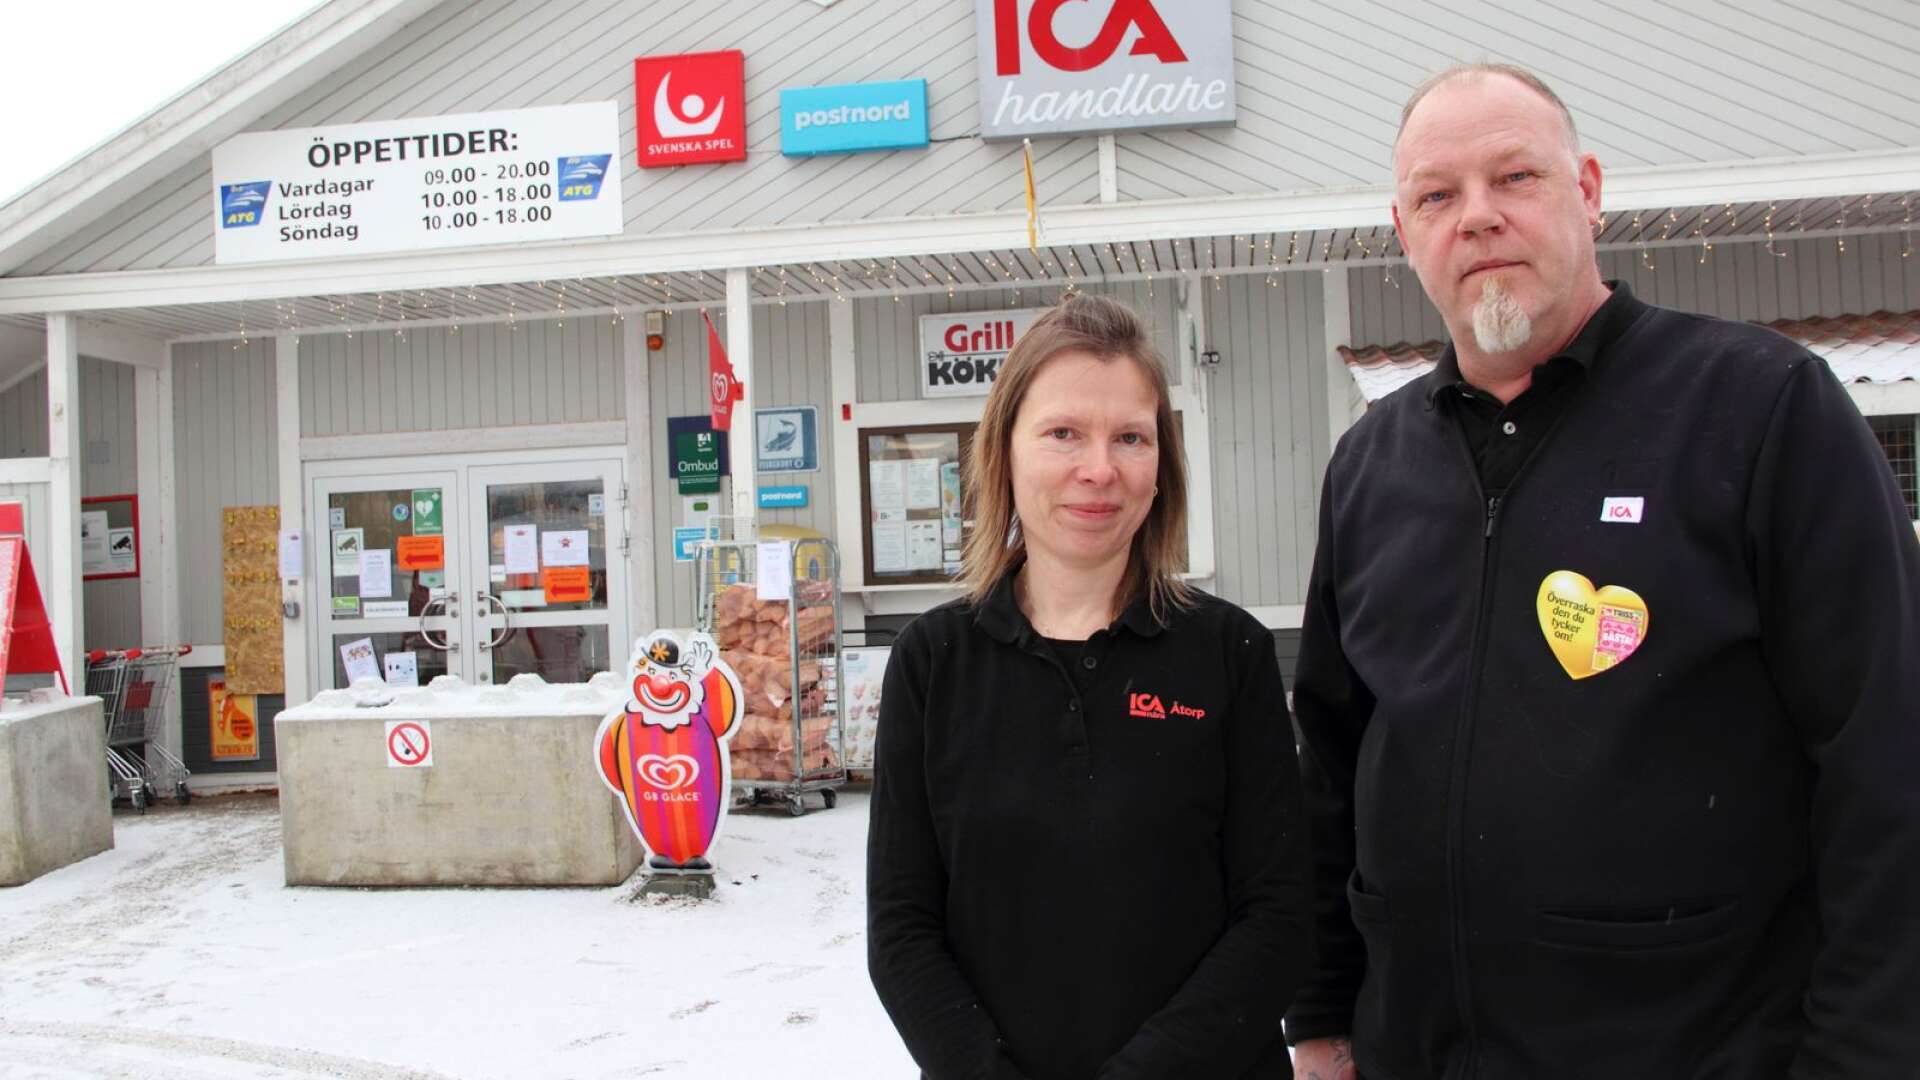 Ica Nära i Åtorp har varit i samma ägo i 20 år, under veckan pågår jubileumoch Magnus och Eva Johansson tänker fortsätta att driva butiken i 20 år till. 